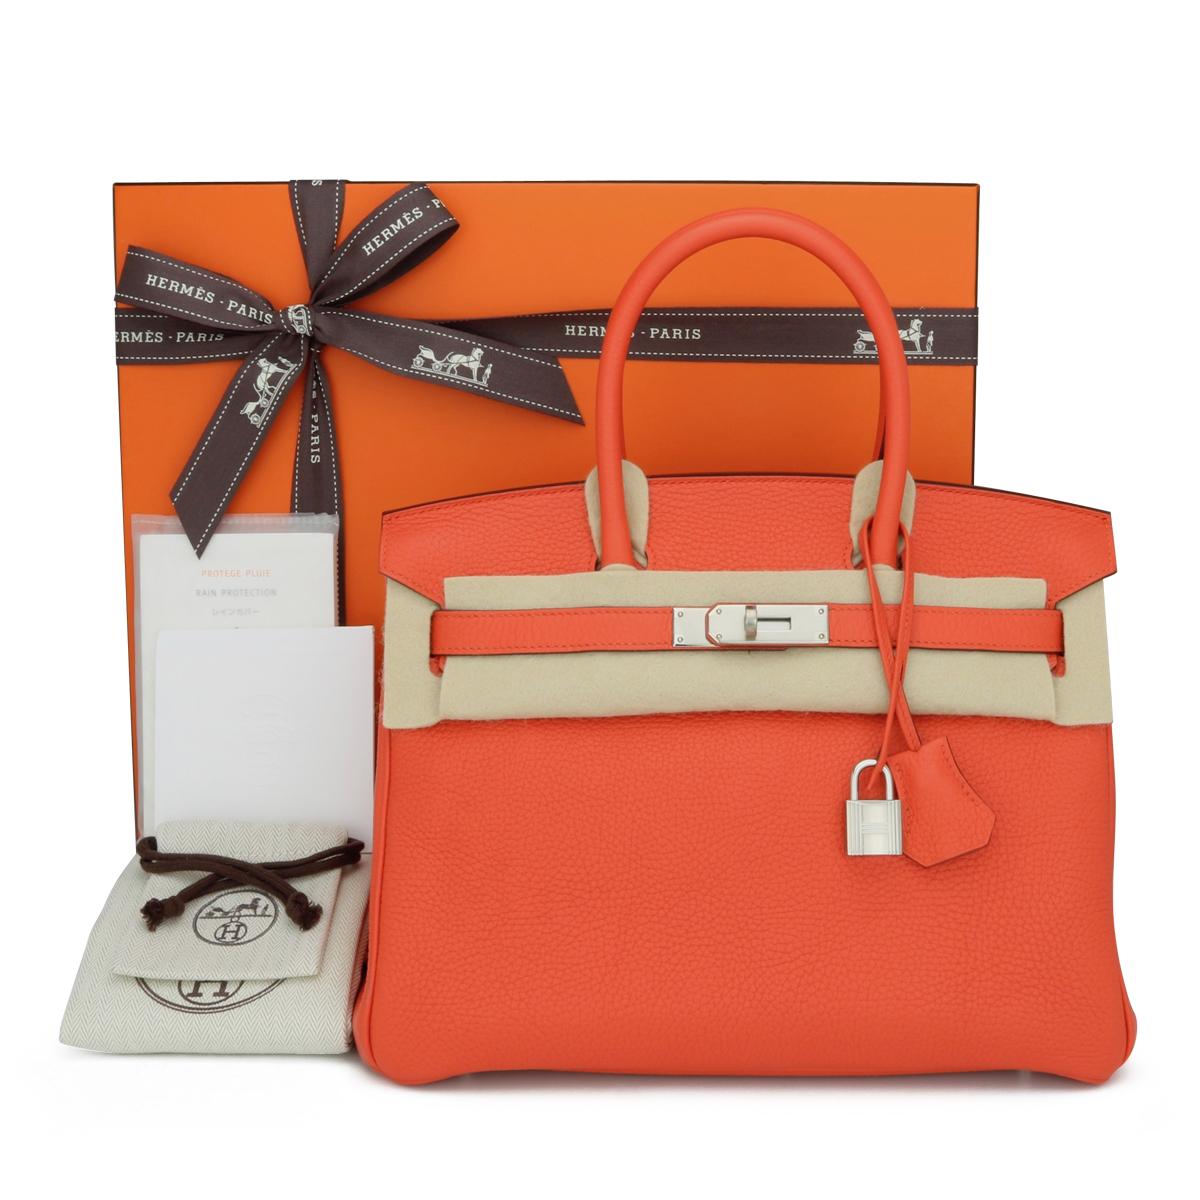 Hermès Birkin Bag 30cm Poppy Orange Togo Leather with Palladium Hardware Stamp T_Year 2015.

Ce sac est encore en très bon état. Le cuir sent encore le frais et conserve sa forme d'origine. Le matériel est encore très brillant.

Une couleur orange